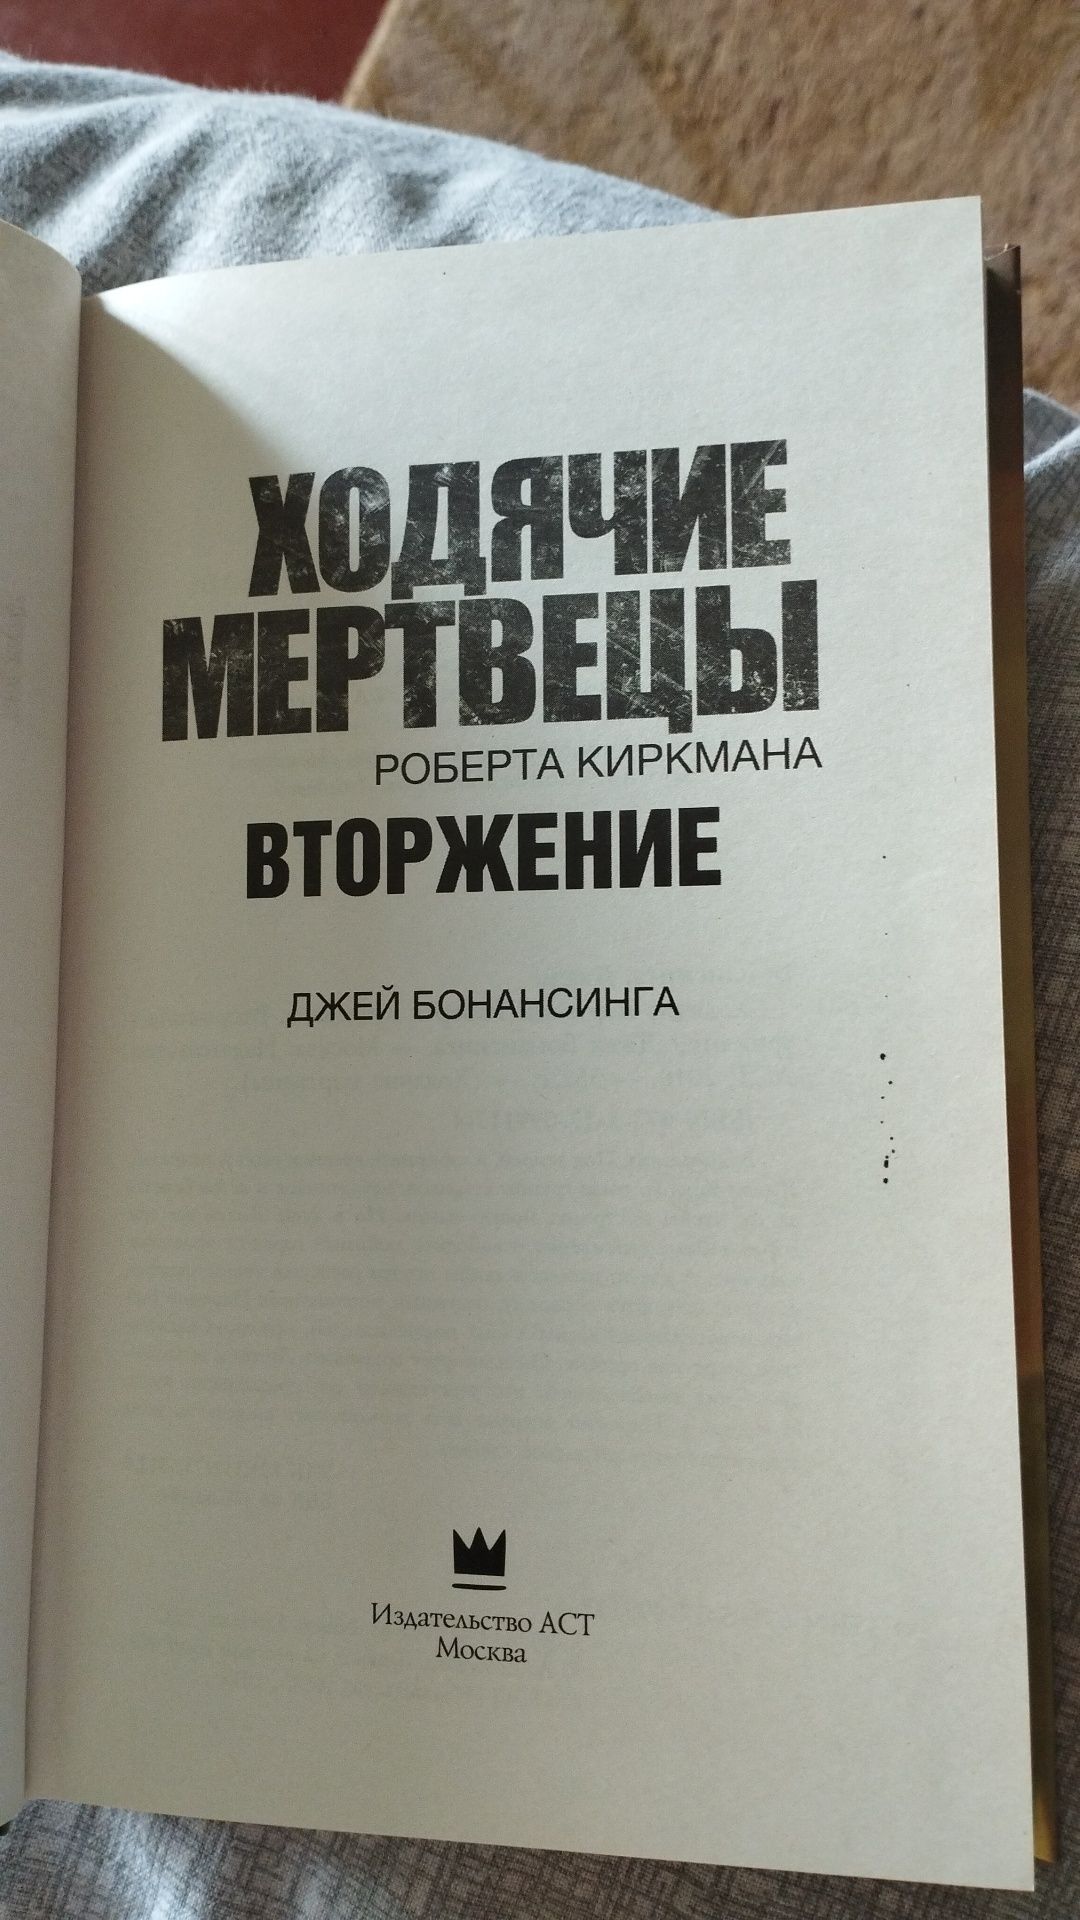 Книга Роберт Киркман, Ходячие мертвецы, Вторжение